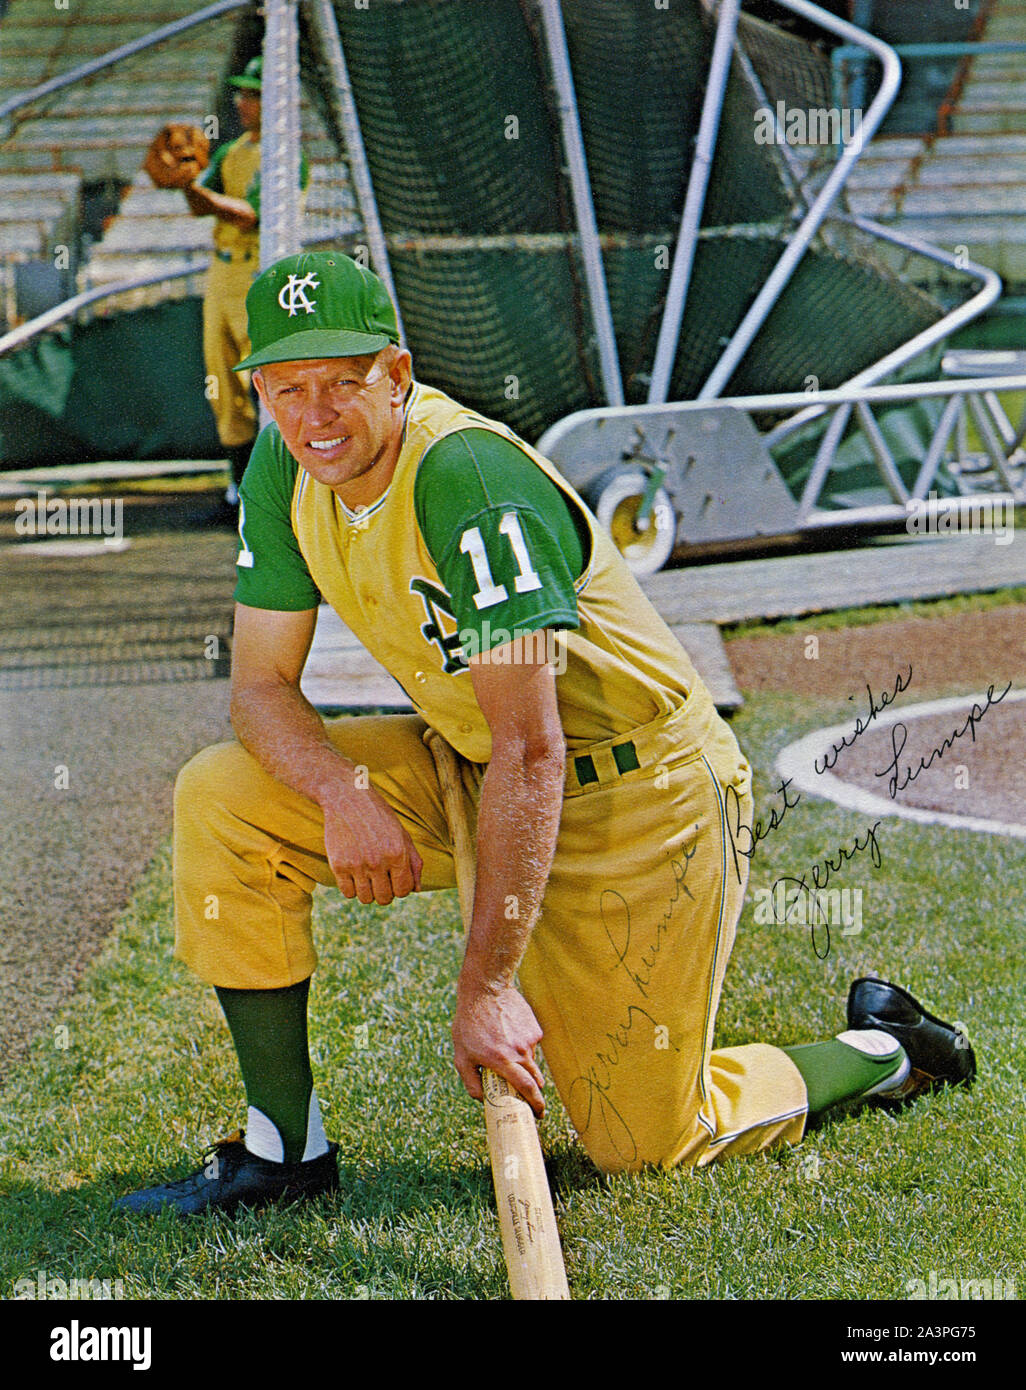 1960s Era Farbe souvenir autographiertes Foto von Kansas City Athletics Spieler Jerry Lumpe in gelben und grünen Uniform. Stockfoto